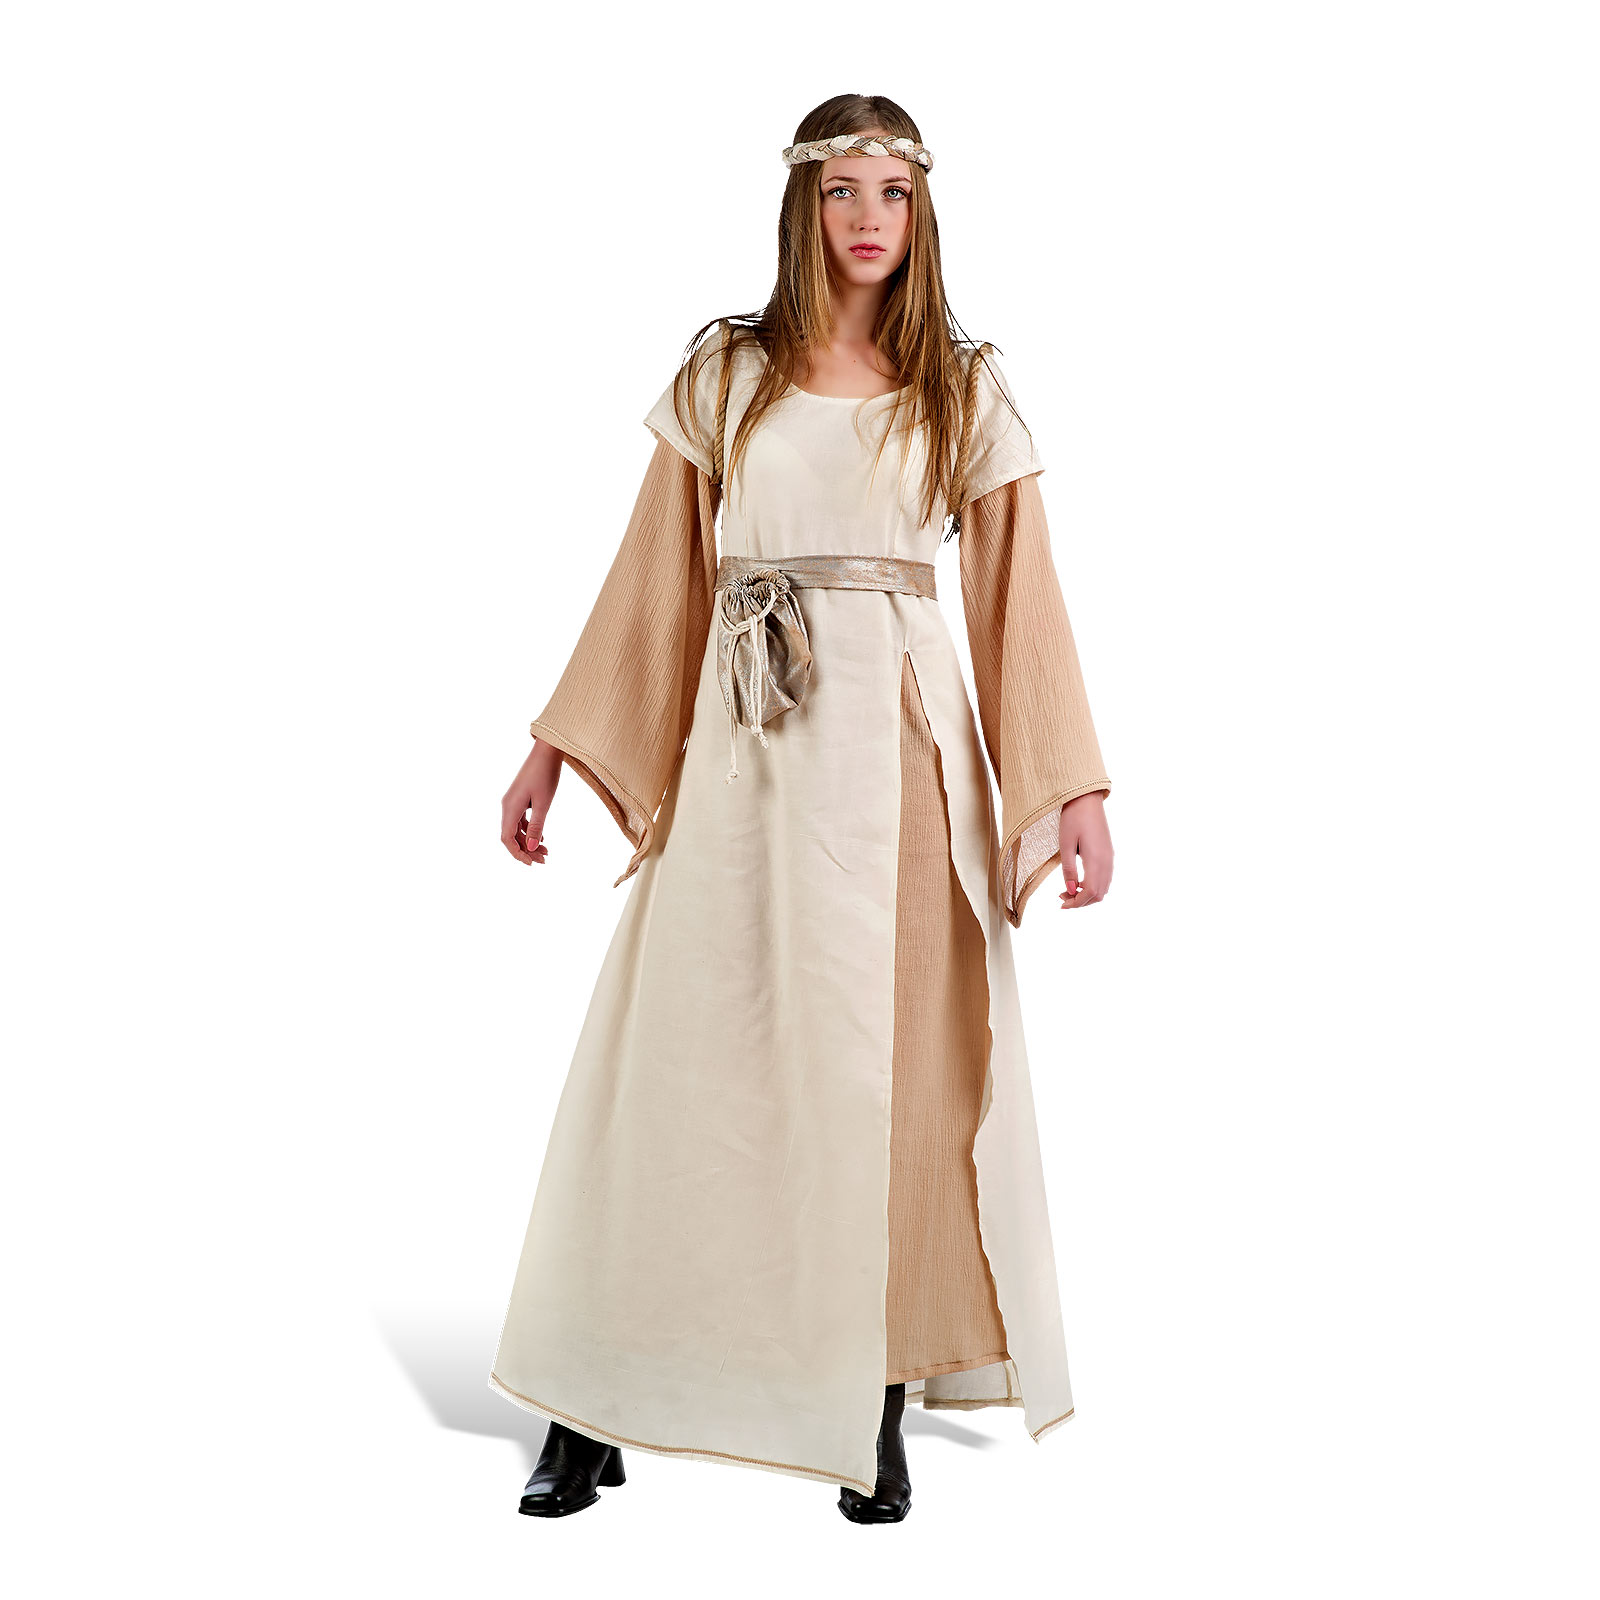 Dame Médiévale - Costume